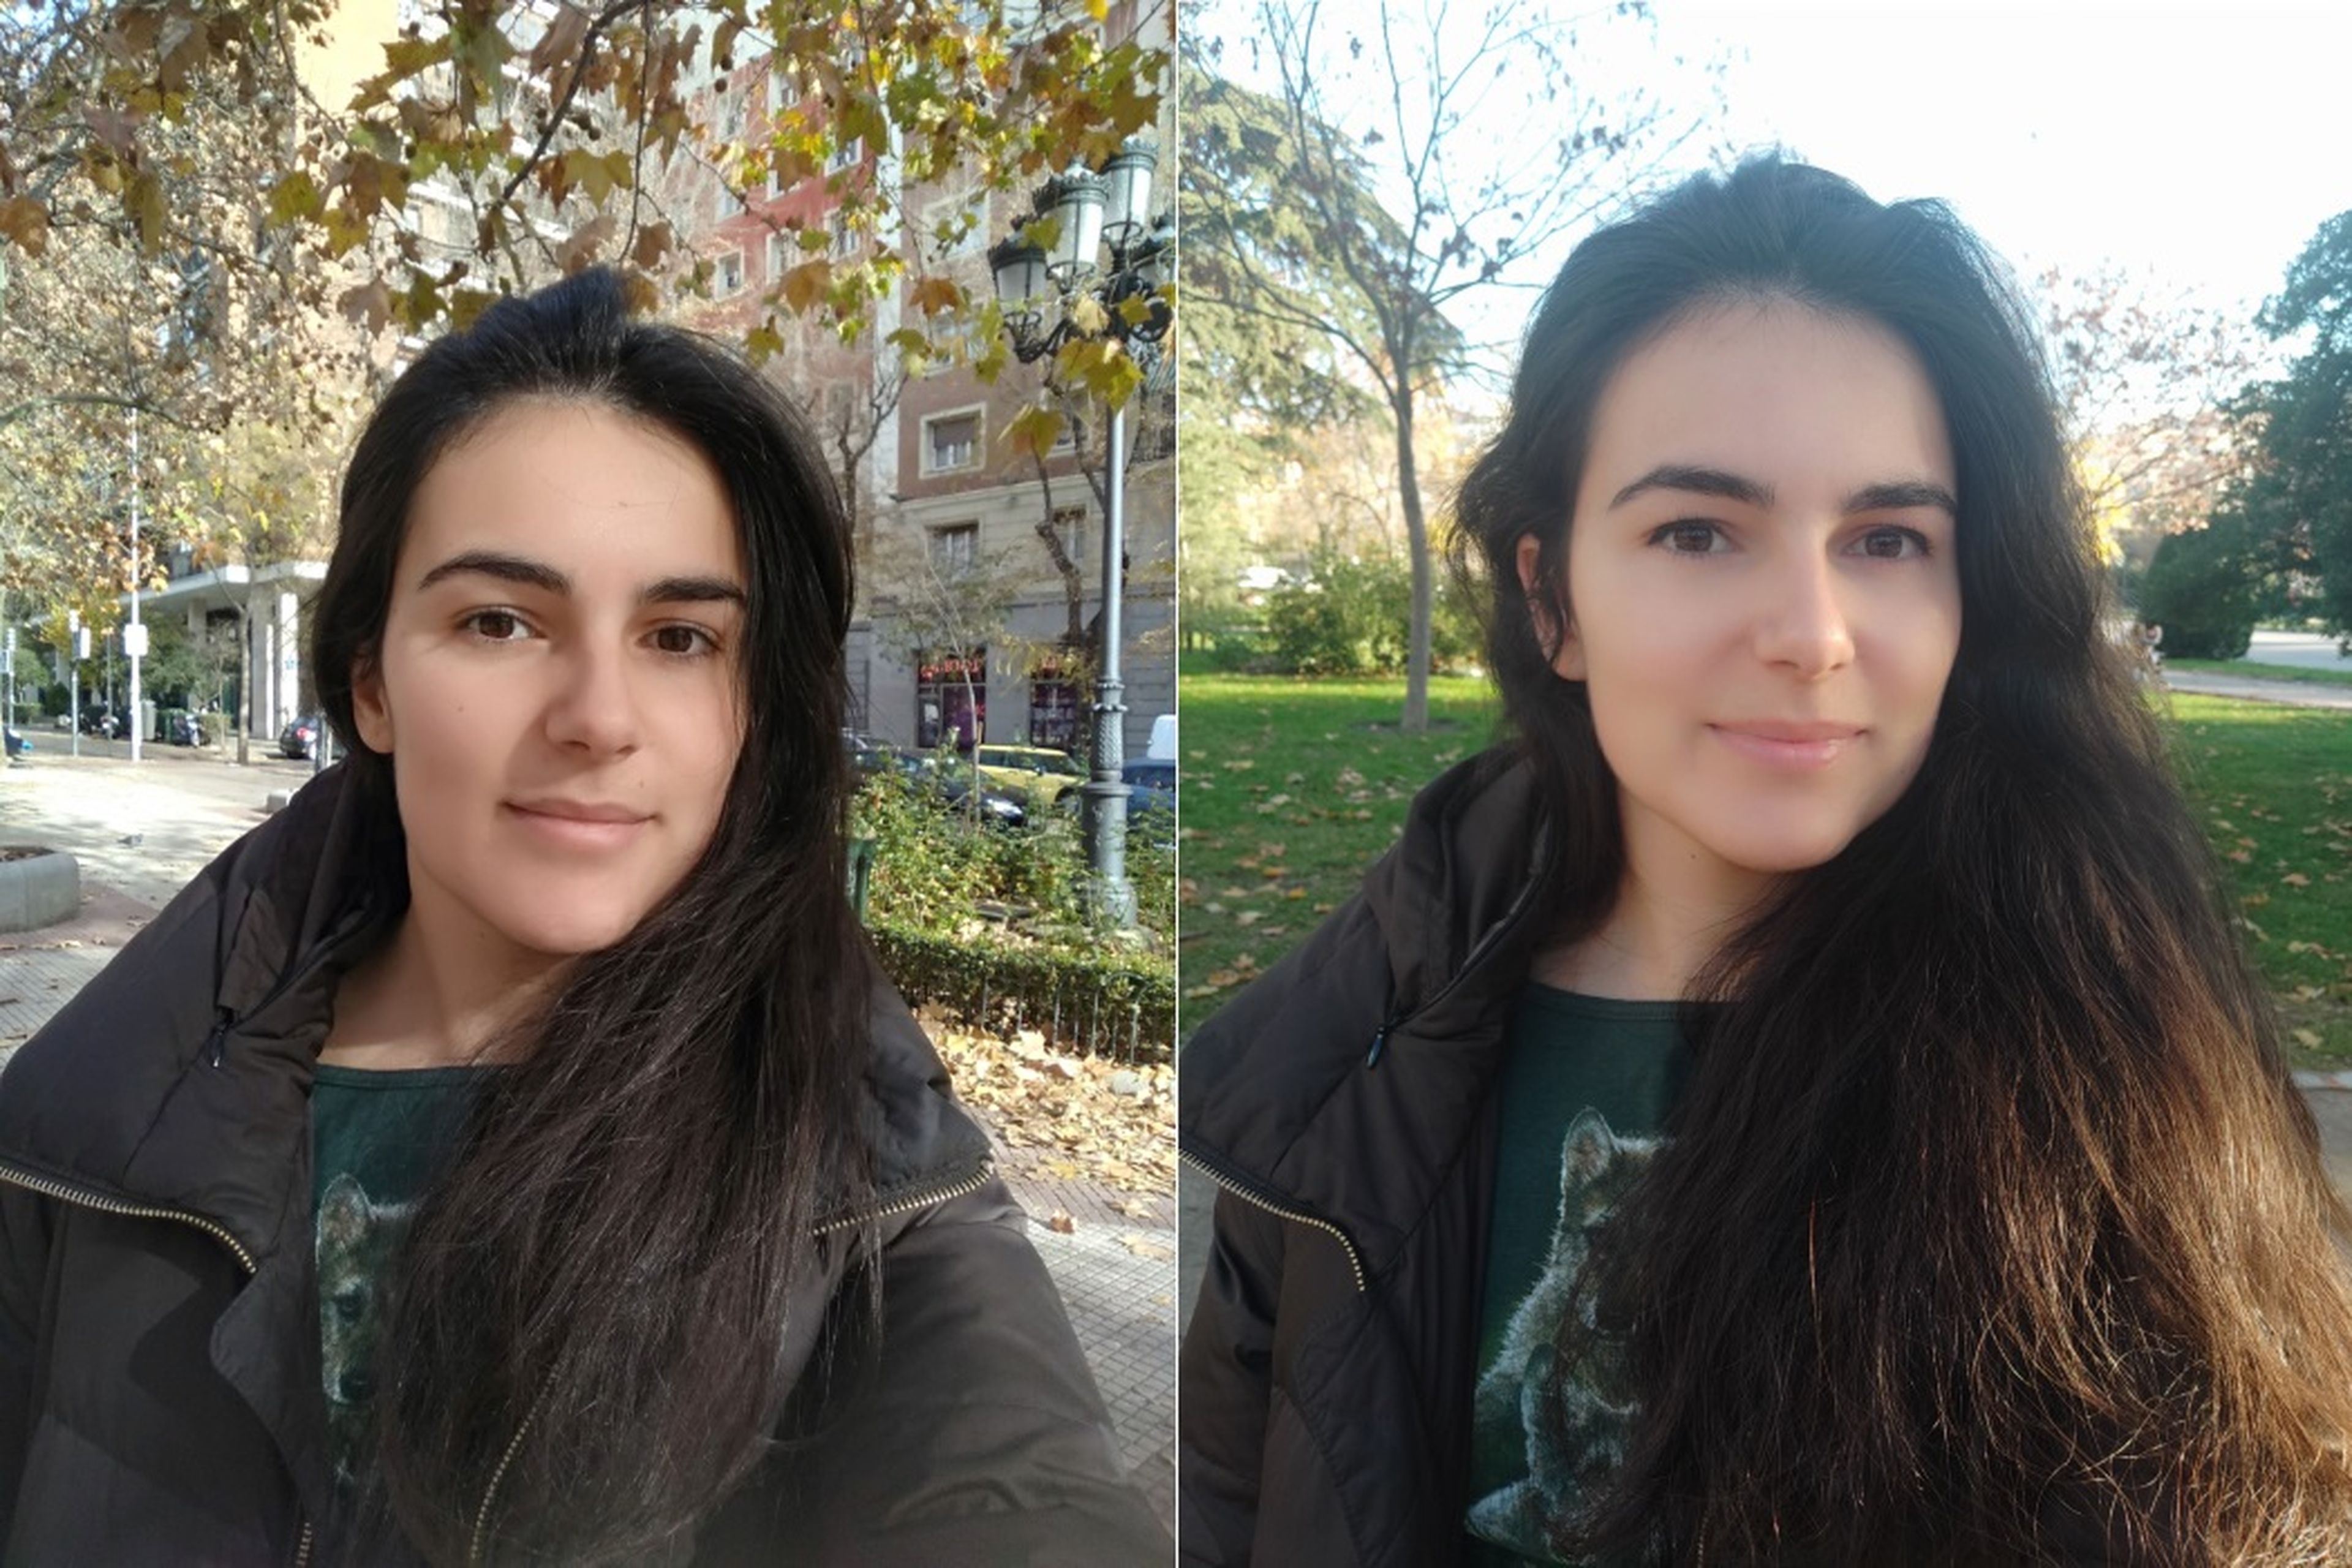 Izquierda: selfie con mi móvil, un Xiaomi Redmi 4X, sin filtros. Derecha: selfie con el Mi MIX 3 y su filtro belleza.